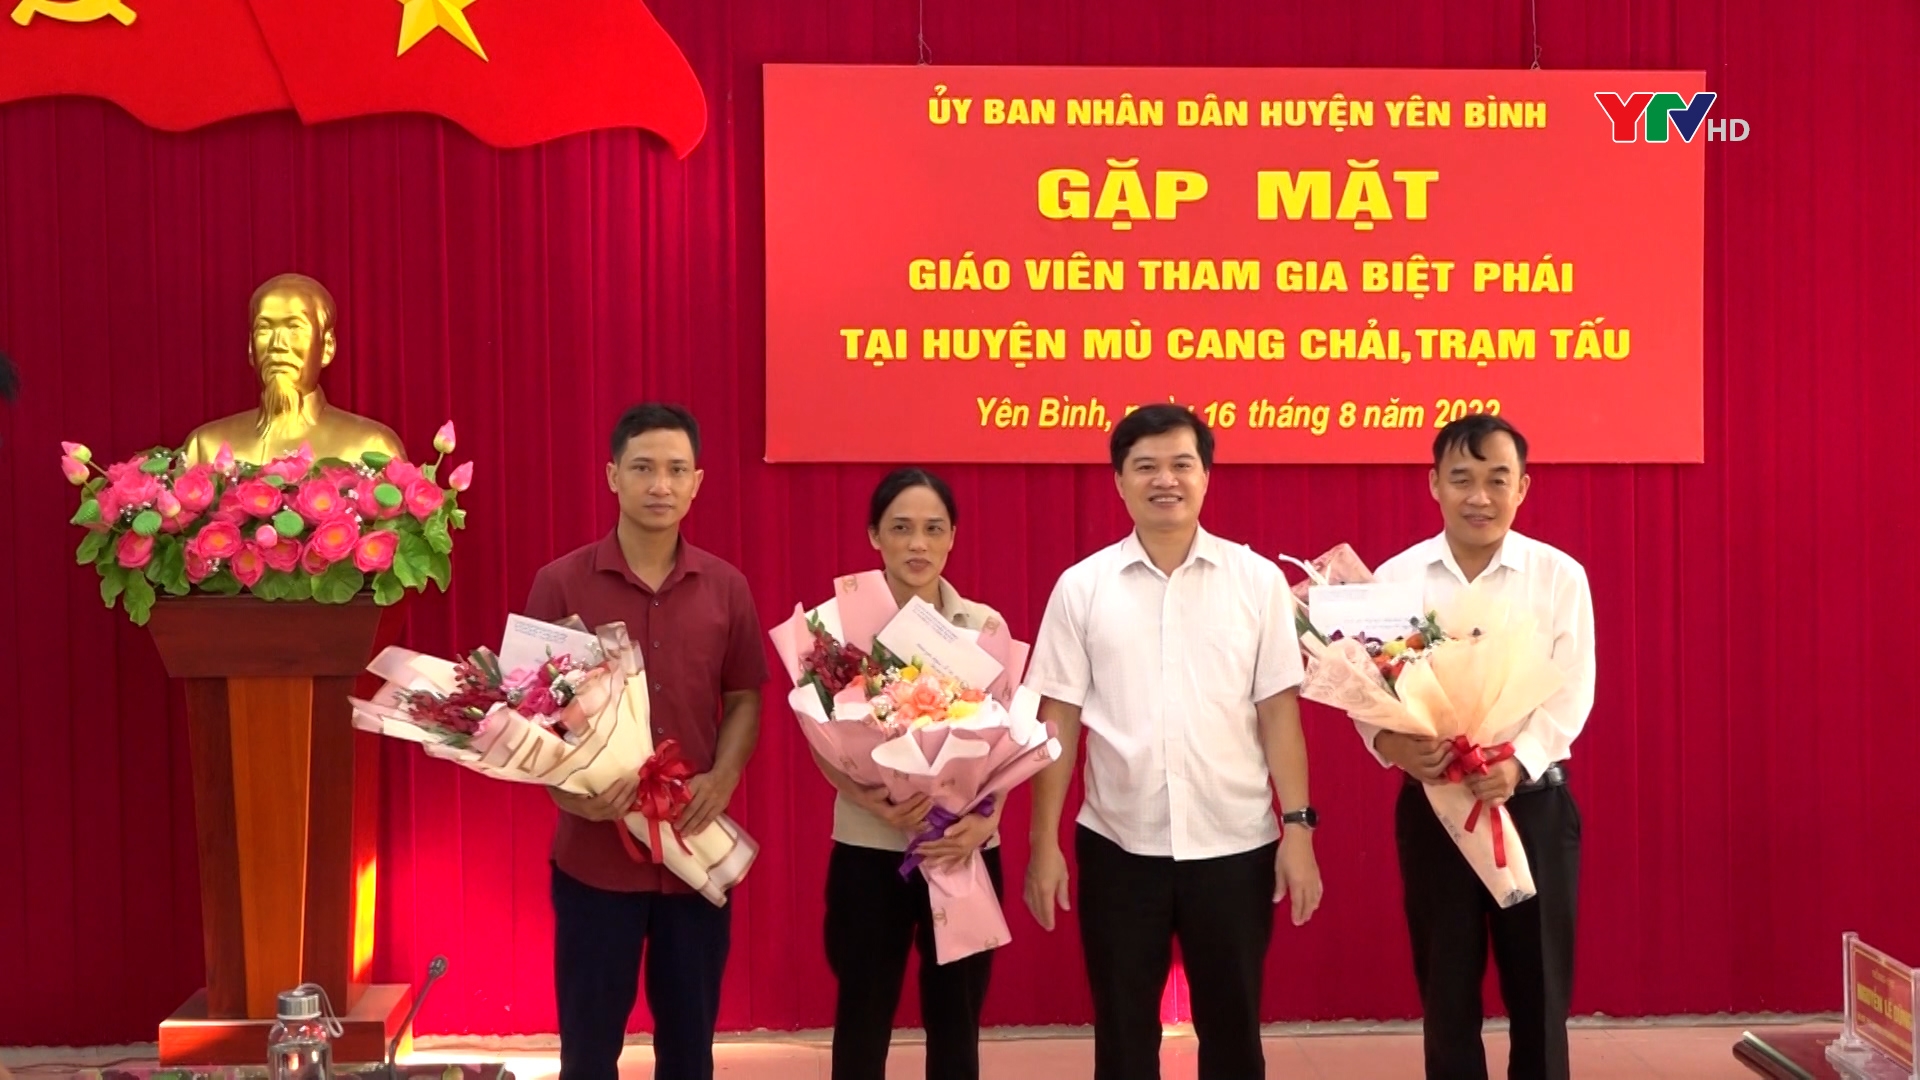 Huyện Yên Bình gặp mặt giáo viên tham gia biệt phái tại huyện Trạm Tấu và Mù Cang Chải